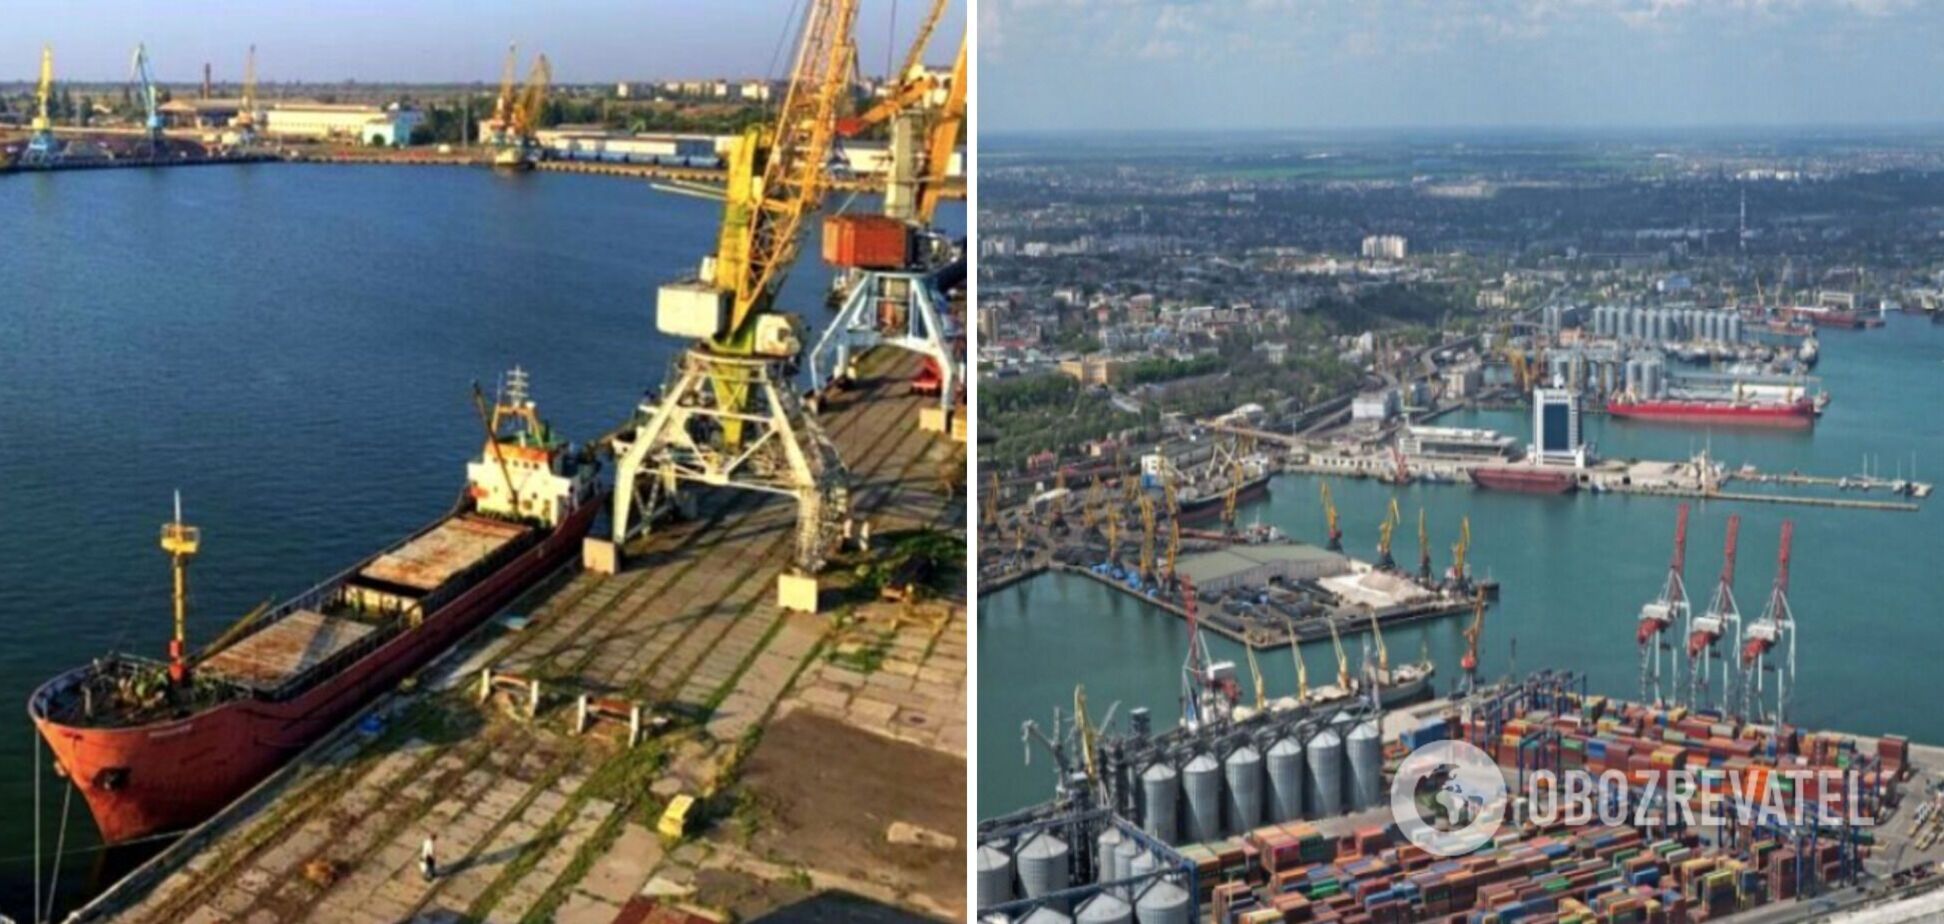 Розблокування портів суттєво поліпшить торговий баланс і обороноздатність України, – Головко